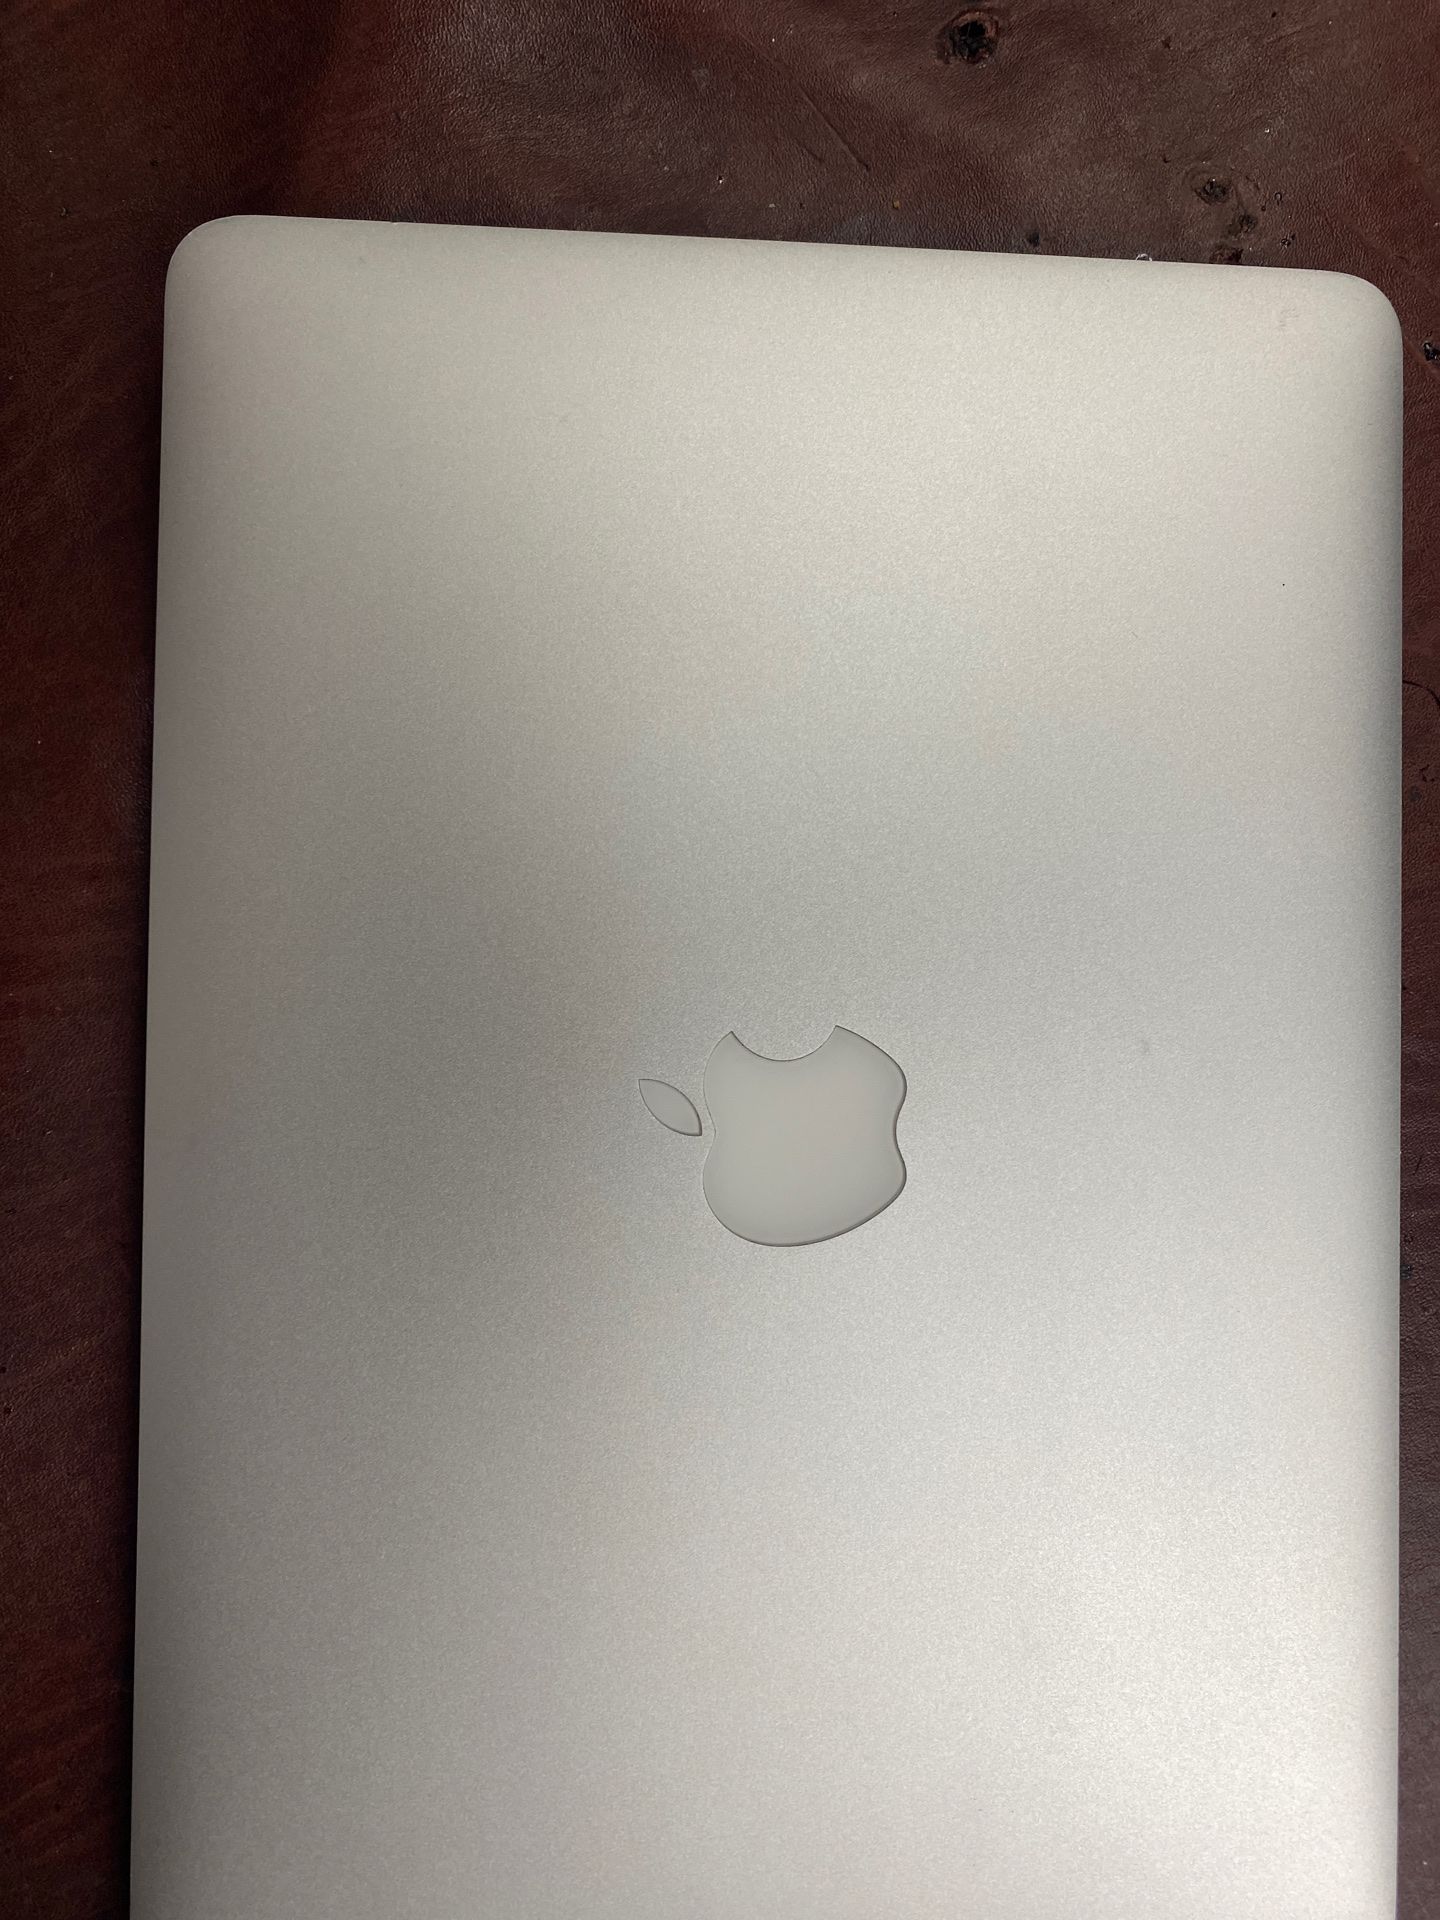 13 in 2013 MacBook Pro.